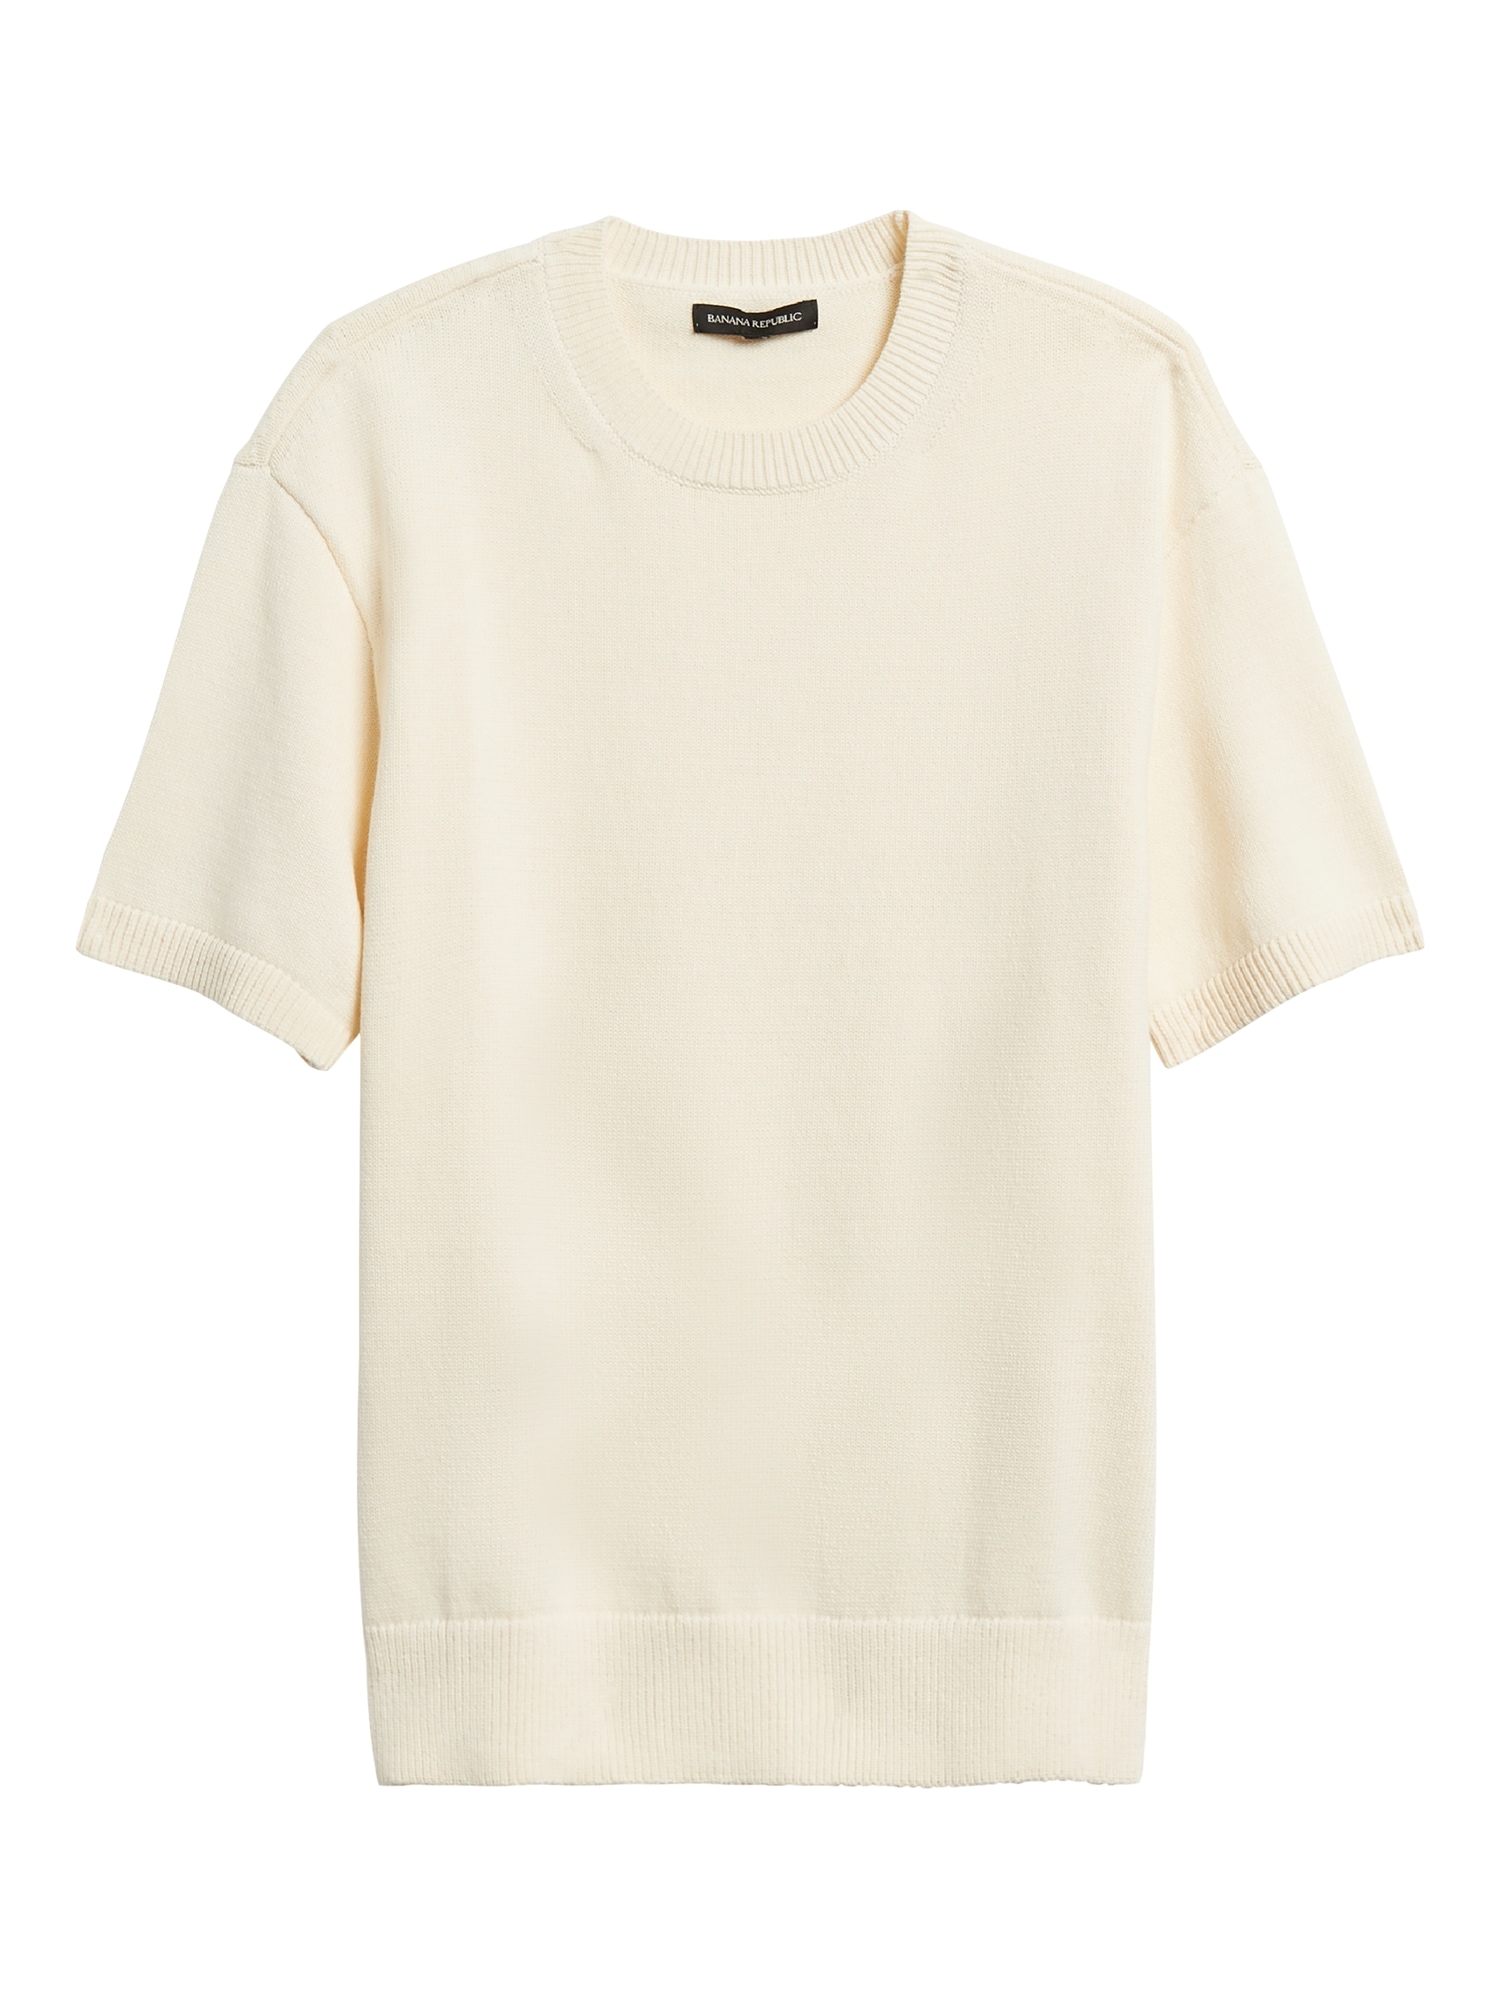 Cotton-Blend Short-Sleeve Sweater